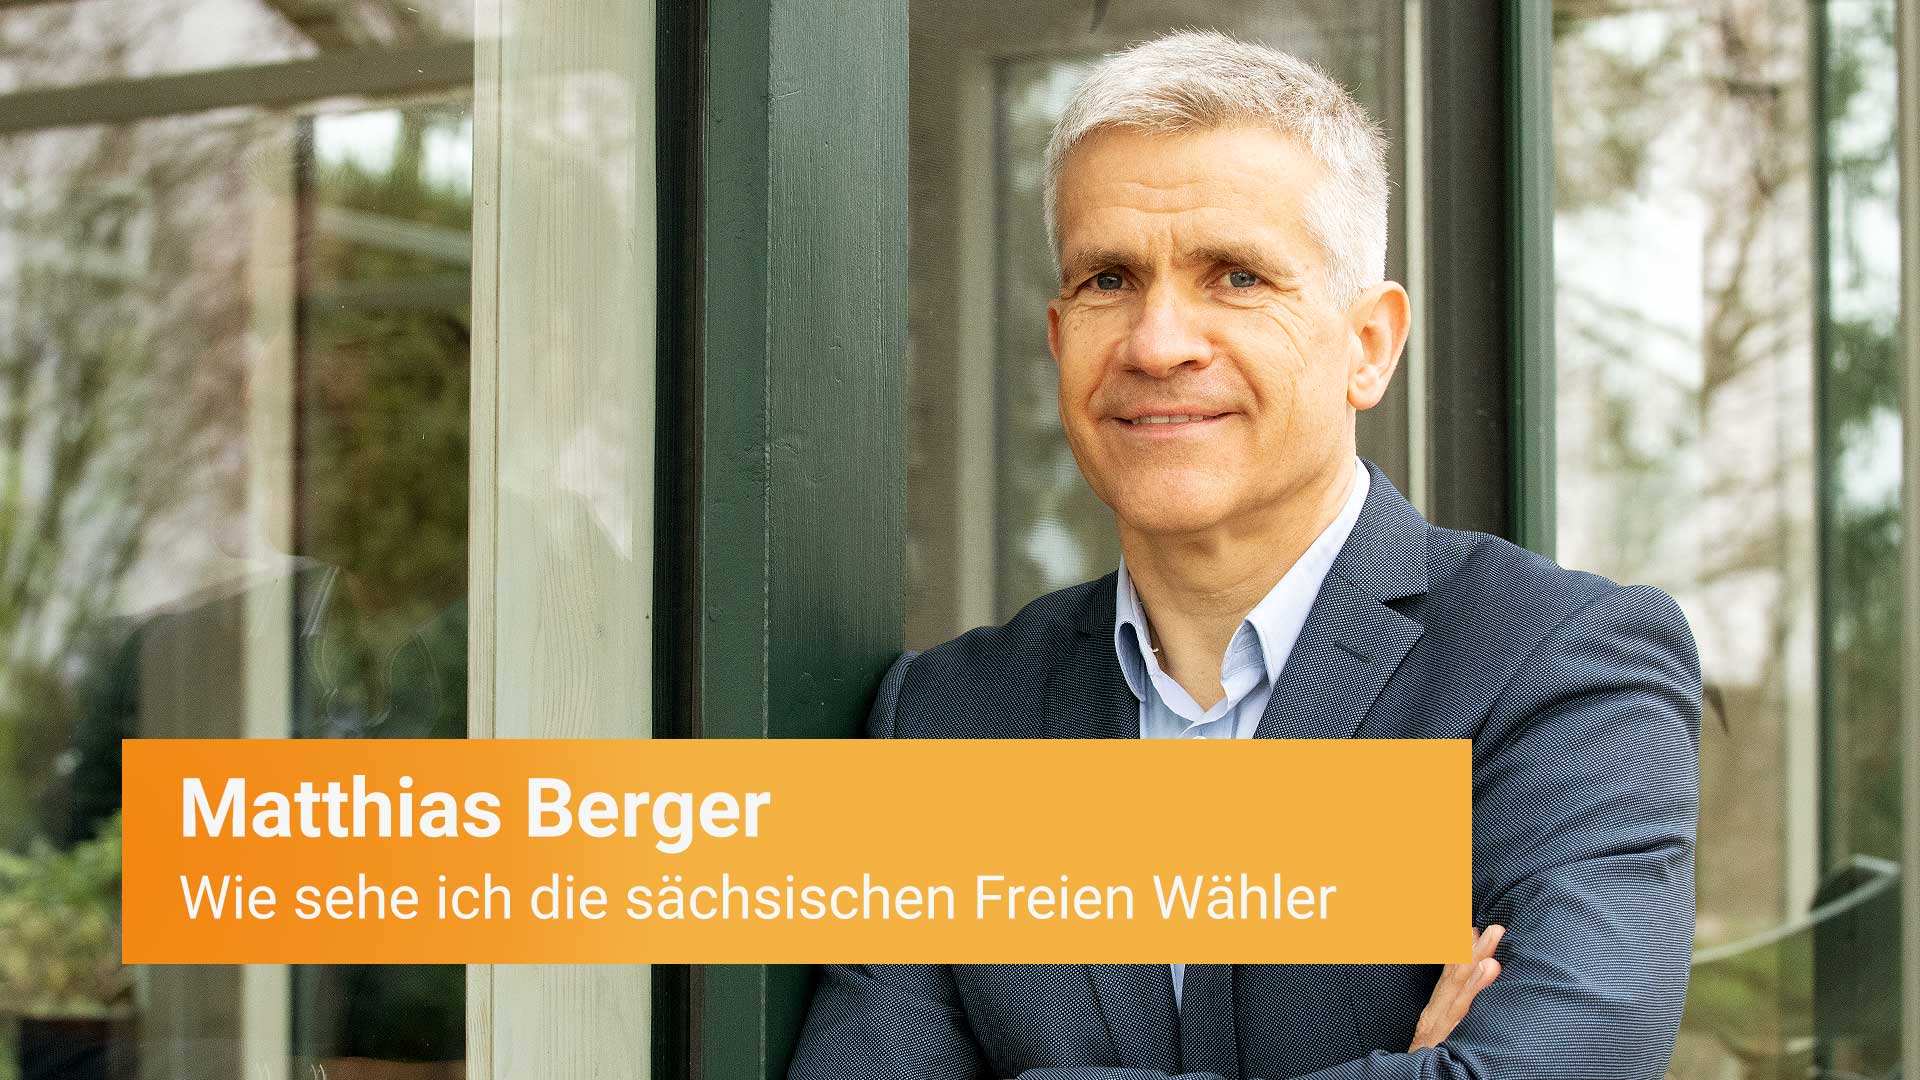 Berger Matthias - Spitzenkandidat der Freie Wähler Sachsen